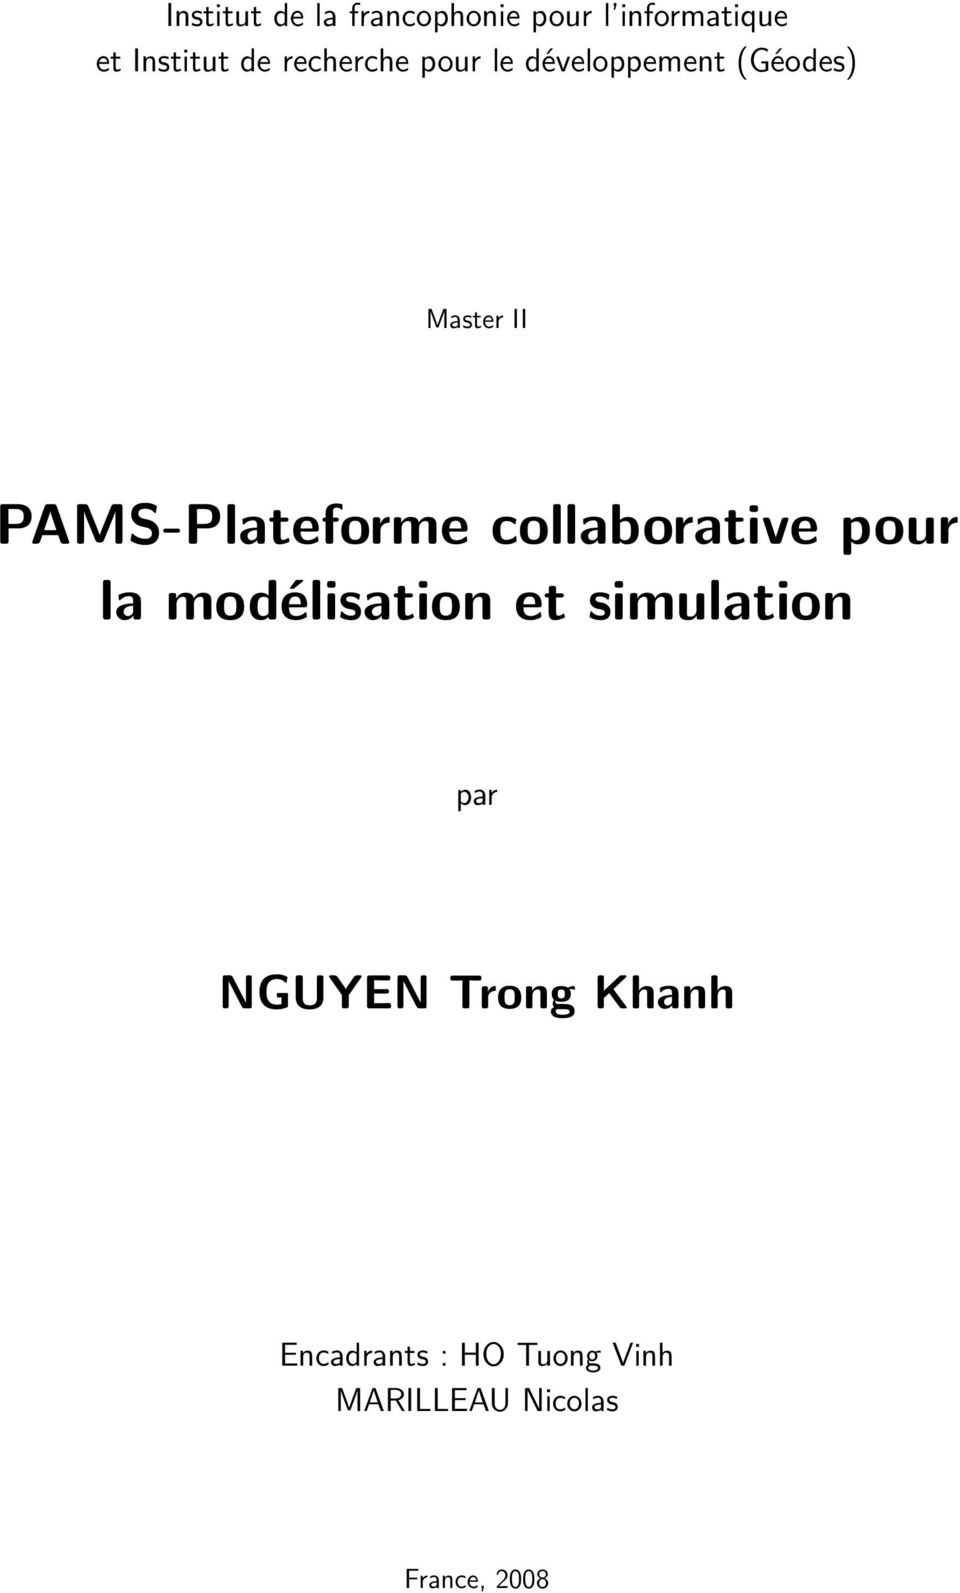 PAMS-Plateforme collaborative pour la modélisation et simulation